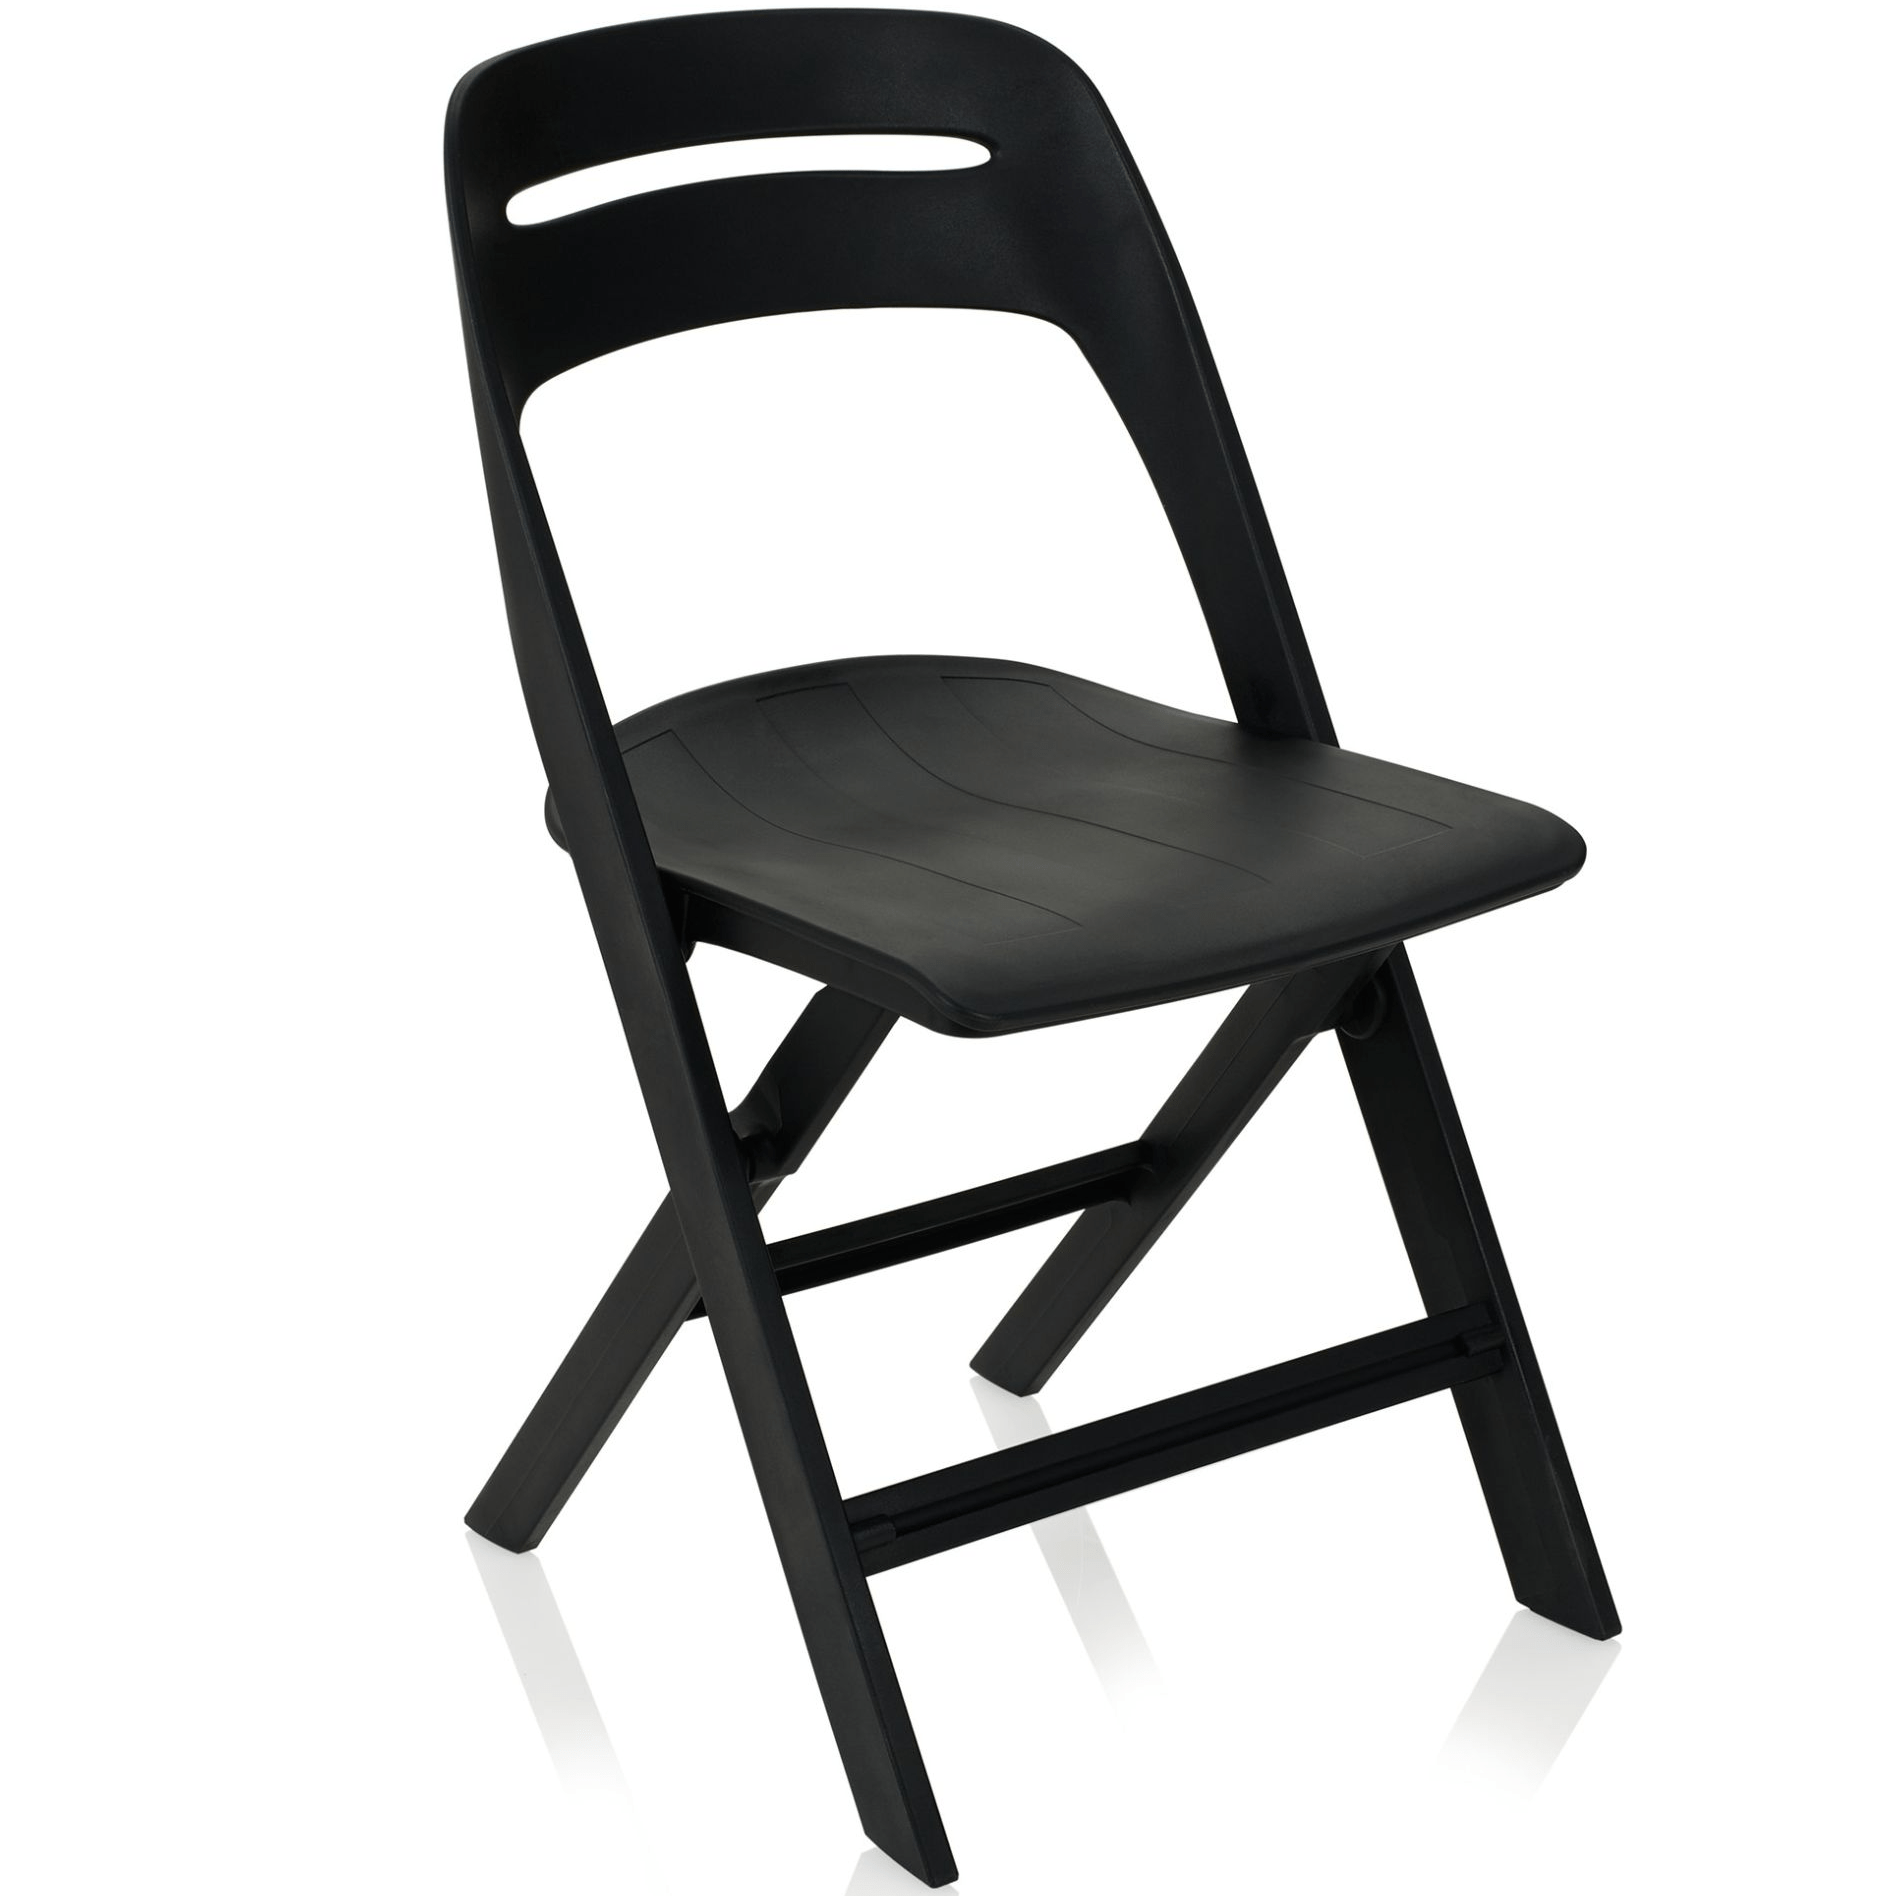 כסא מתקפל יוקרתי, מעוצב ונוח דגם לזארק שחור מוגן מים לשימוש פנים או חוץ